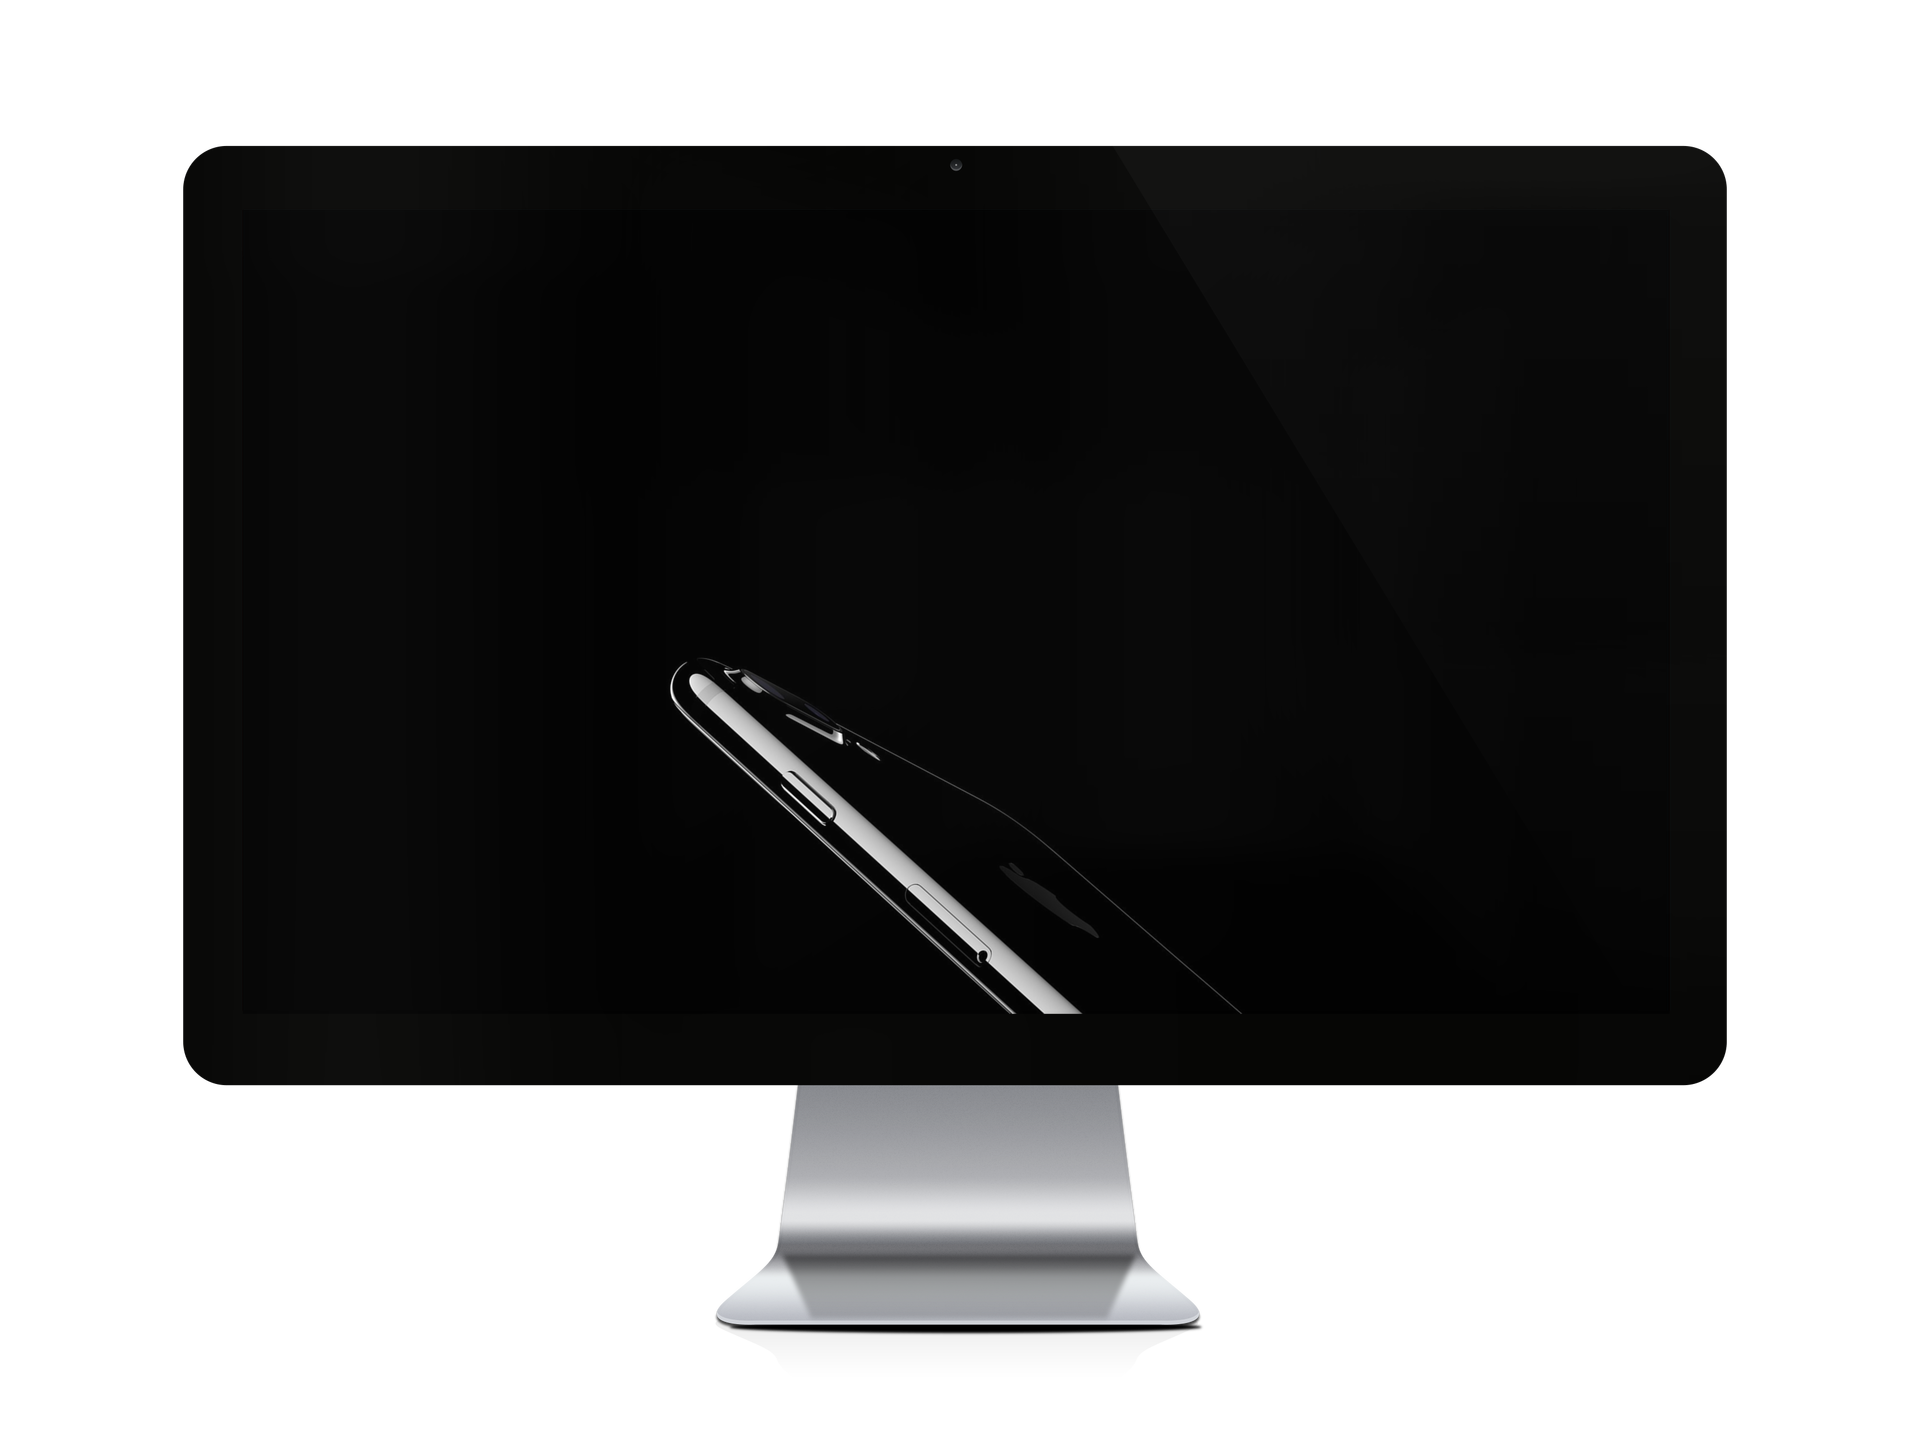 iPhone 7 jet black desktop wallpaper splash